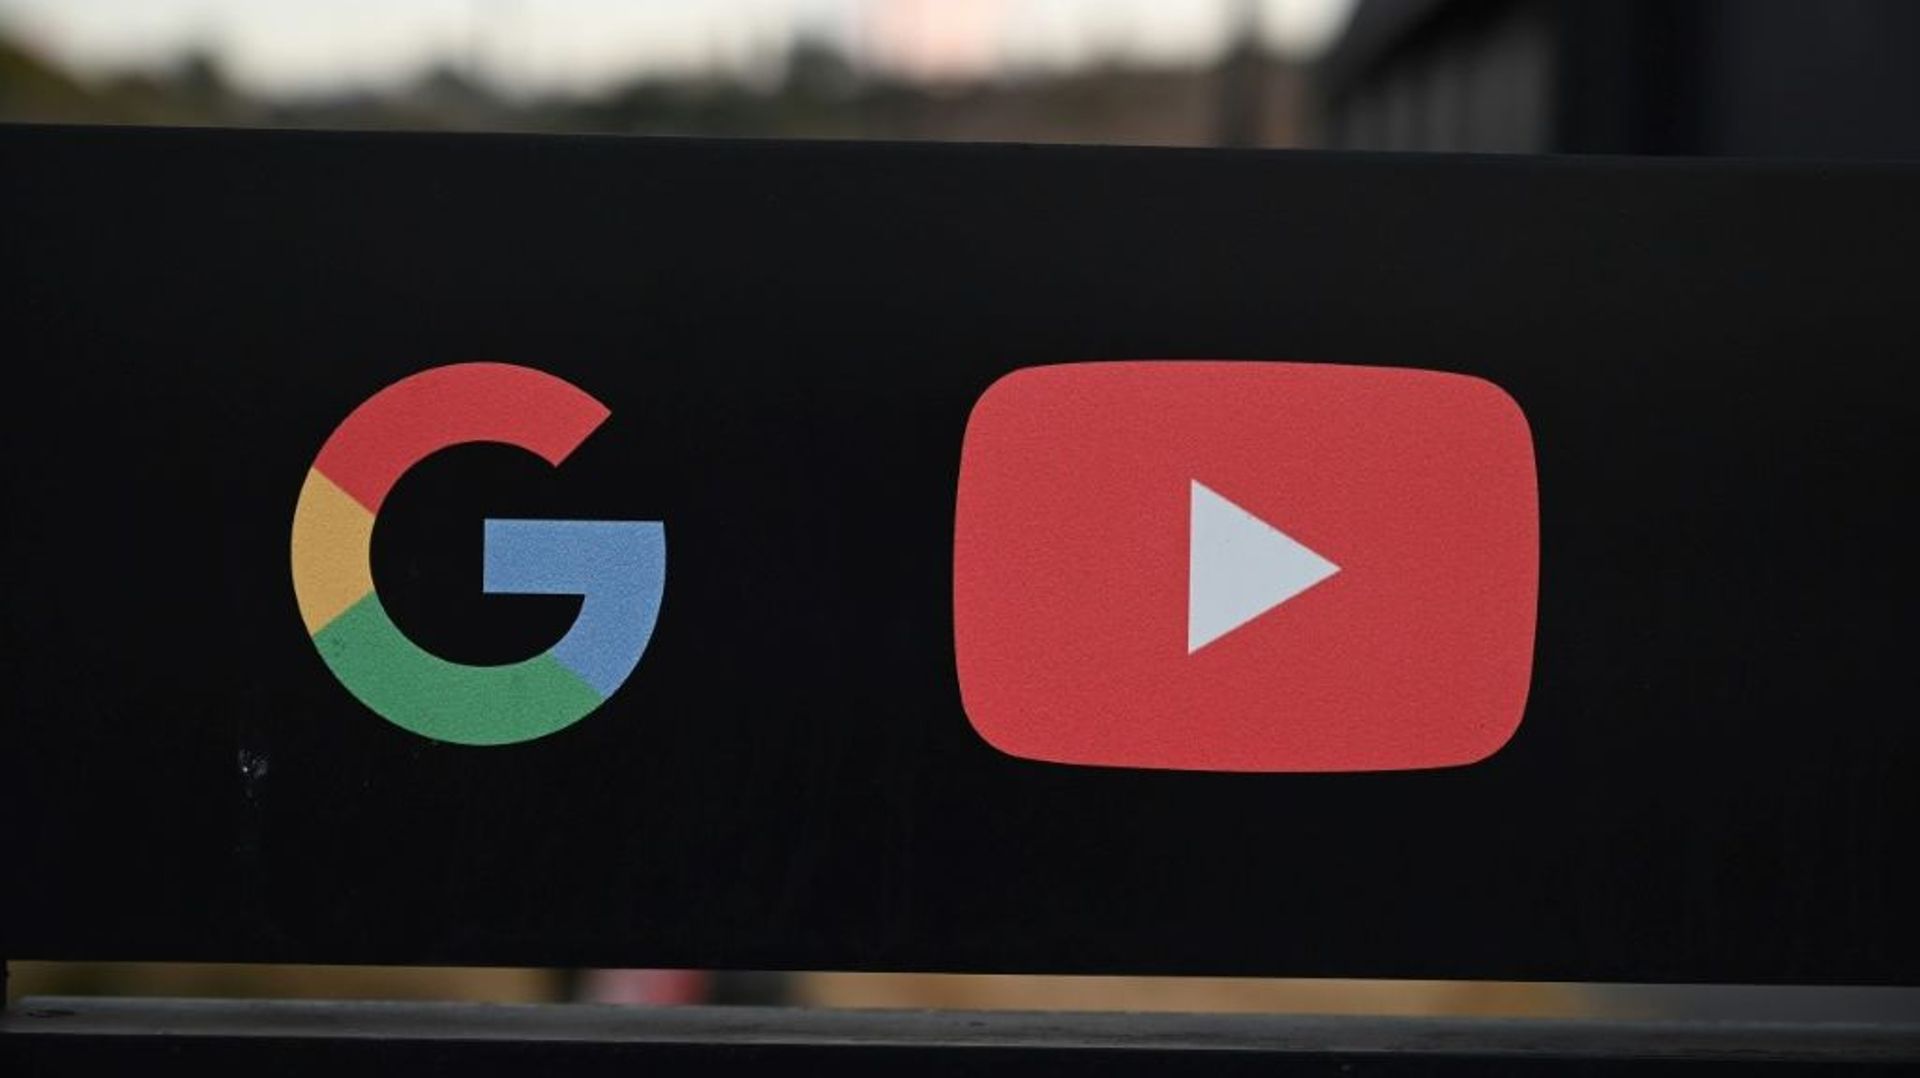 La Russie a annoncé lundi l'ouverture d'une enquête contre Google et sa plateforme de vidéos YouTube pour "abus de position dominante", dernier exemple du bras de fer entre les autorités russes et les géants du numérique.